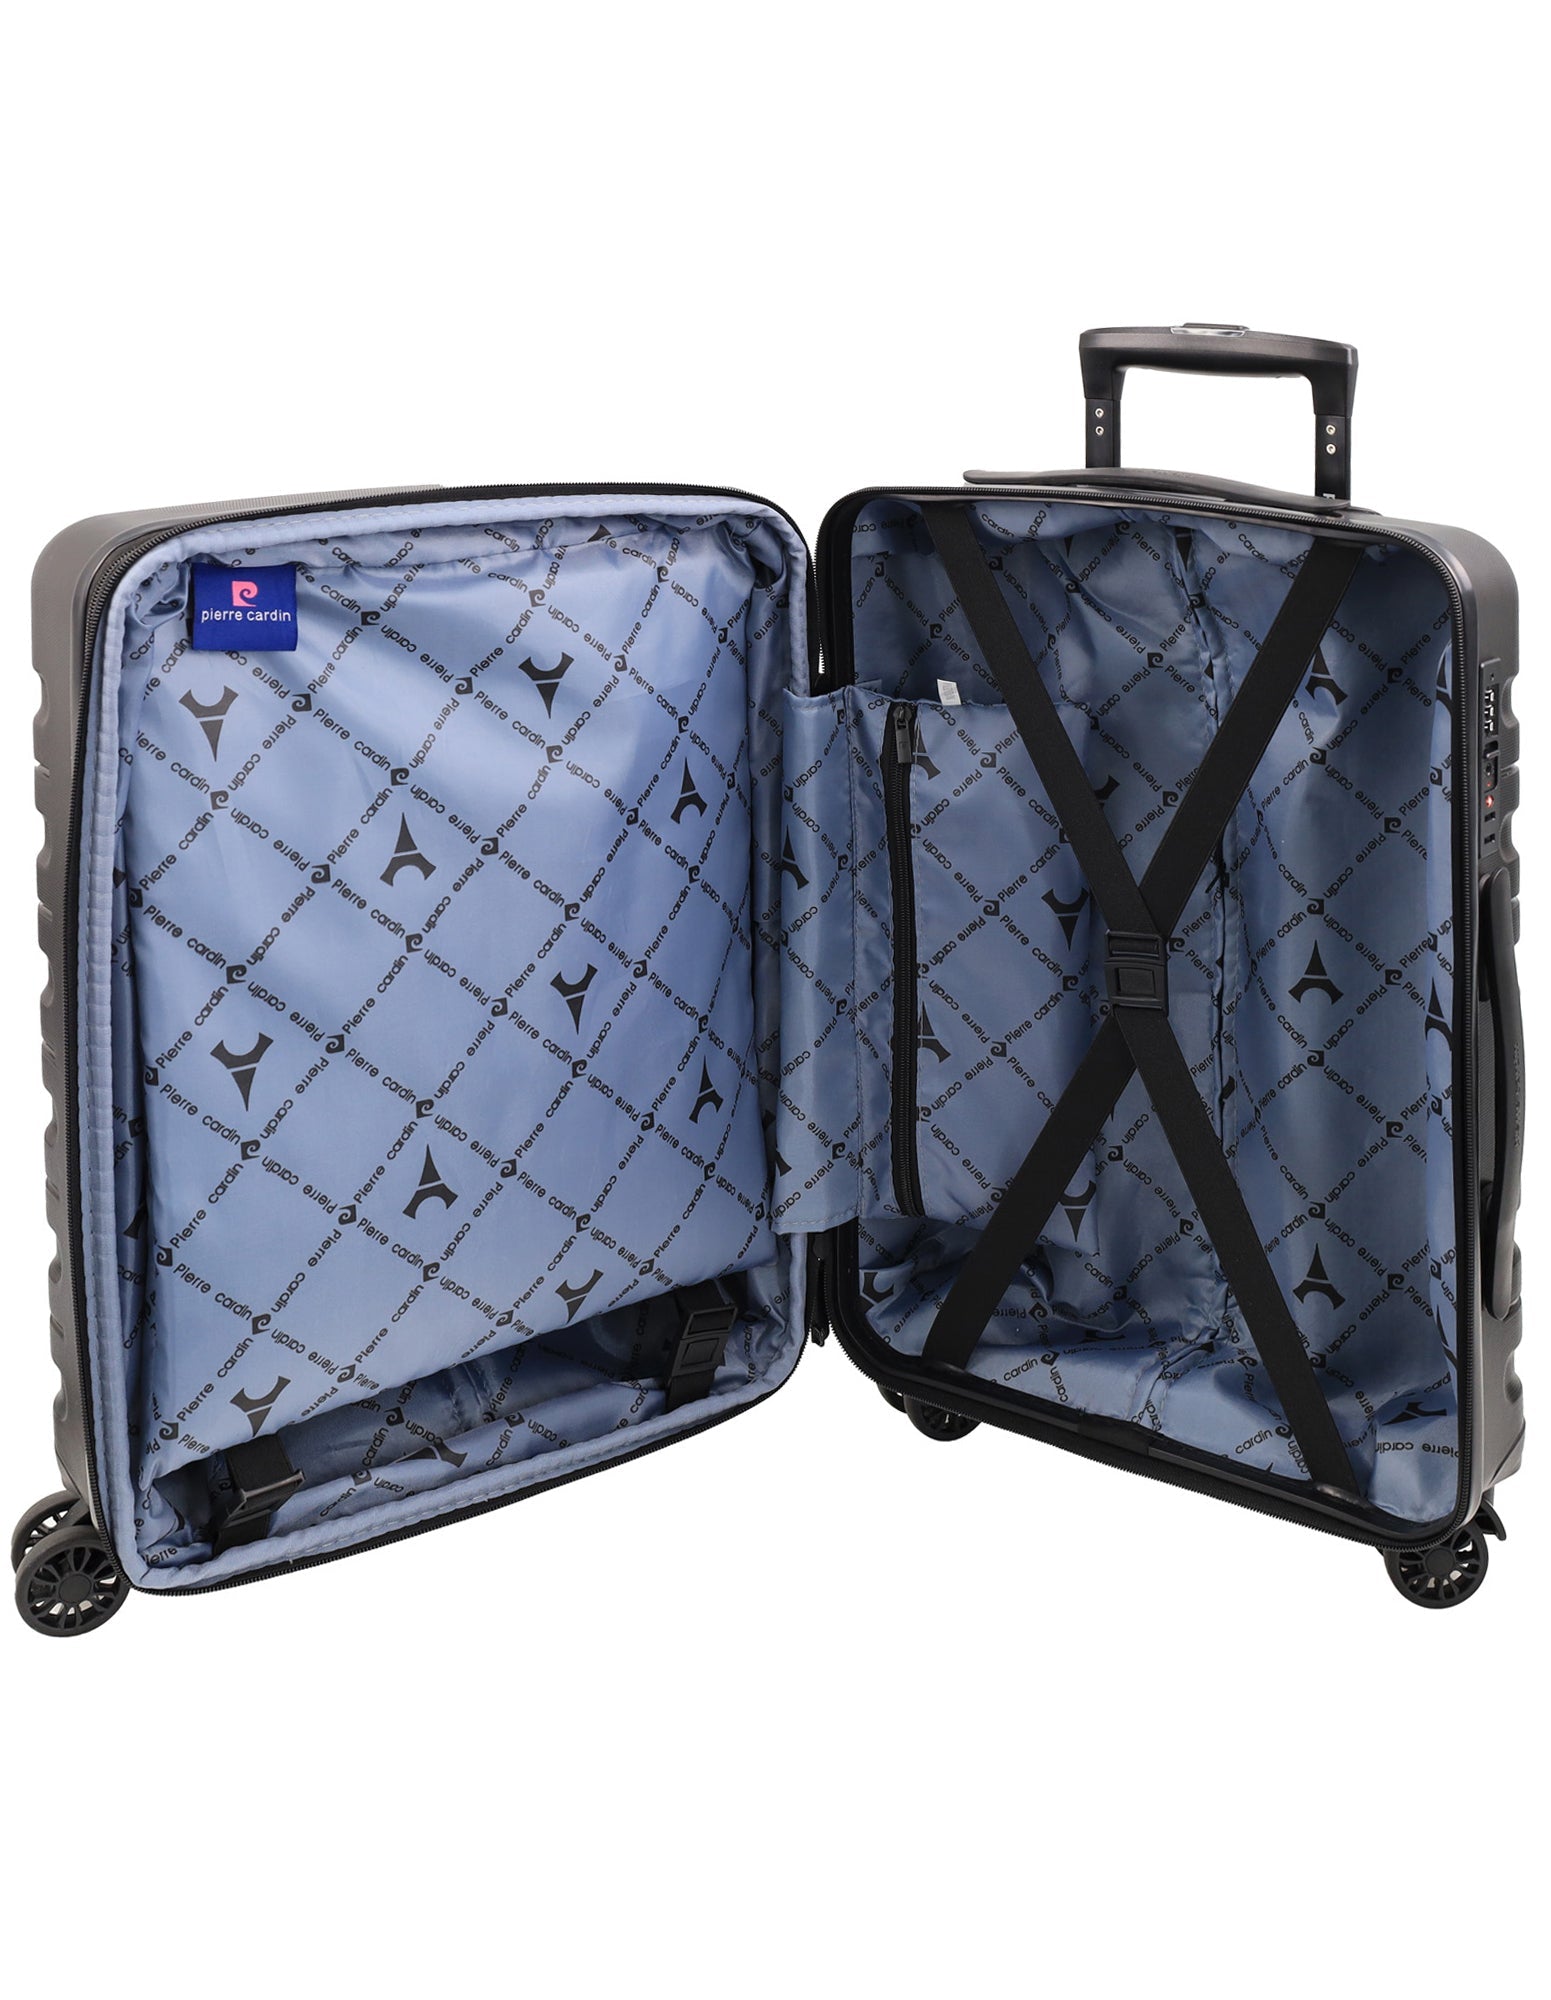 Pierre Cardin 54cm CABIN Hard Shell Suitcase in Black